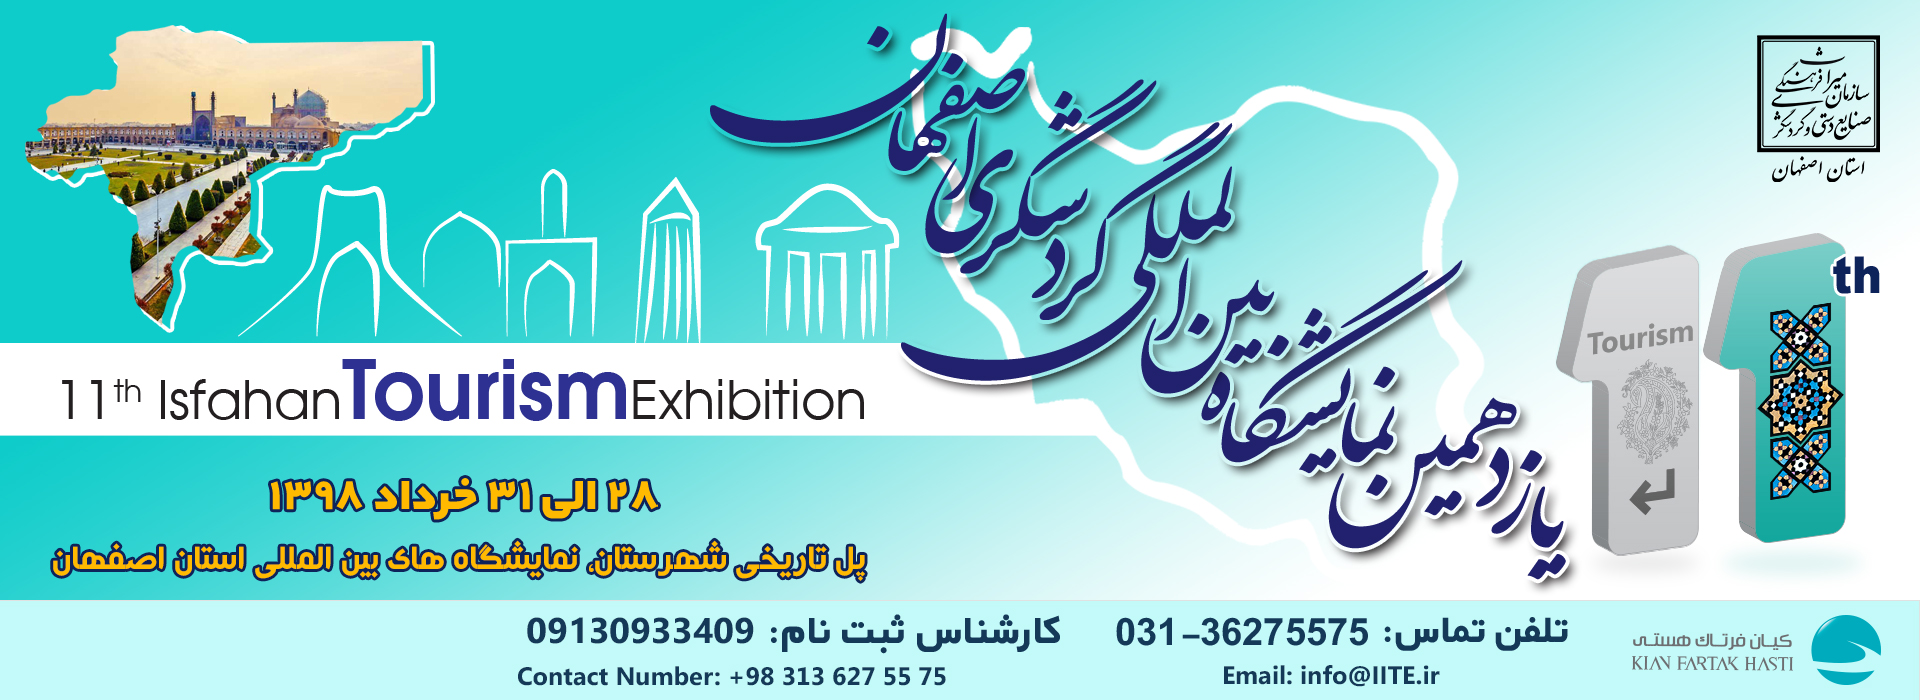 نمایشگاه گردشگری اصفهان